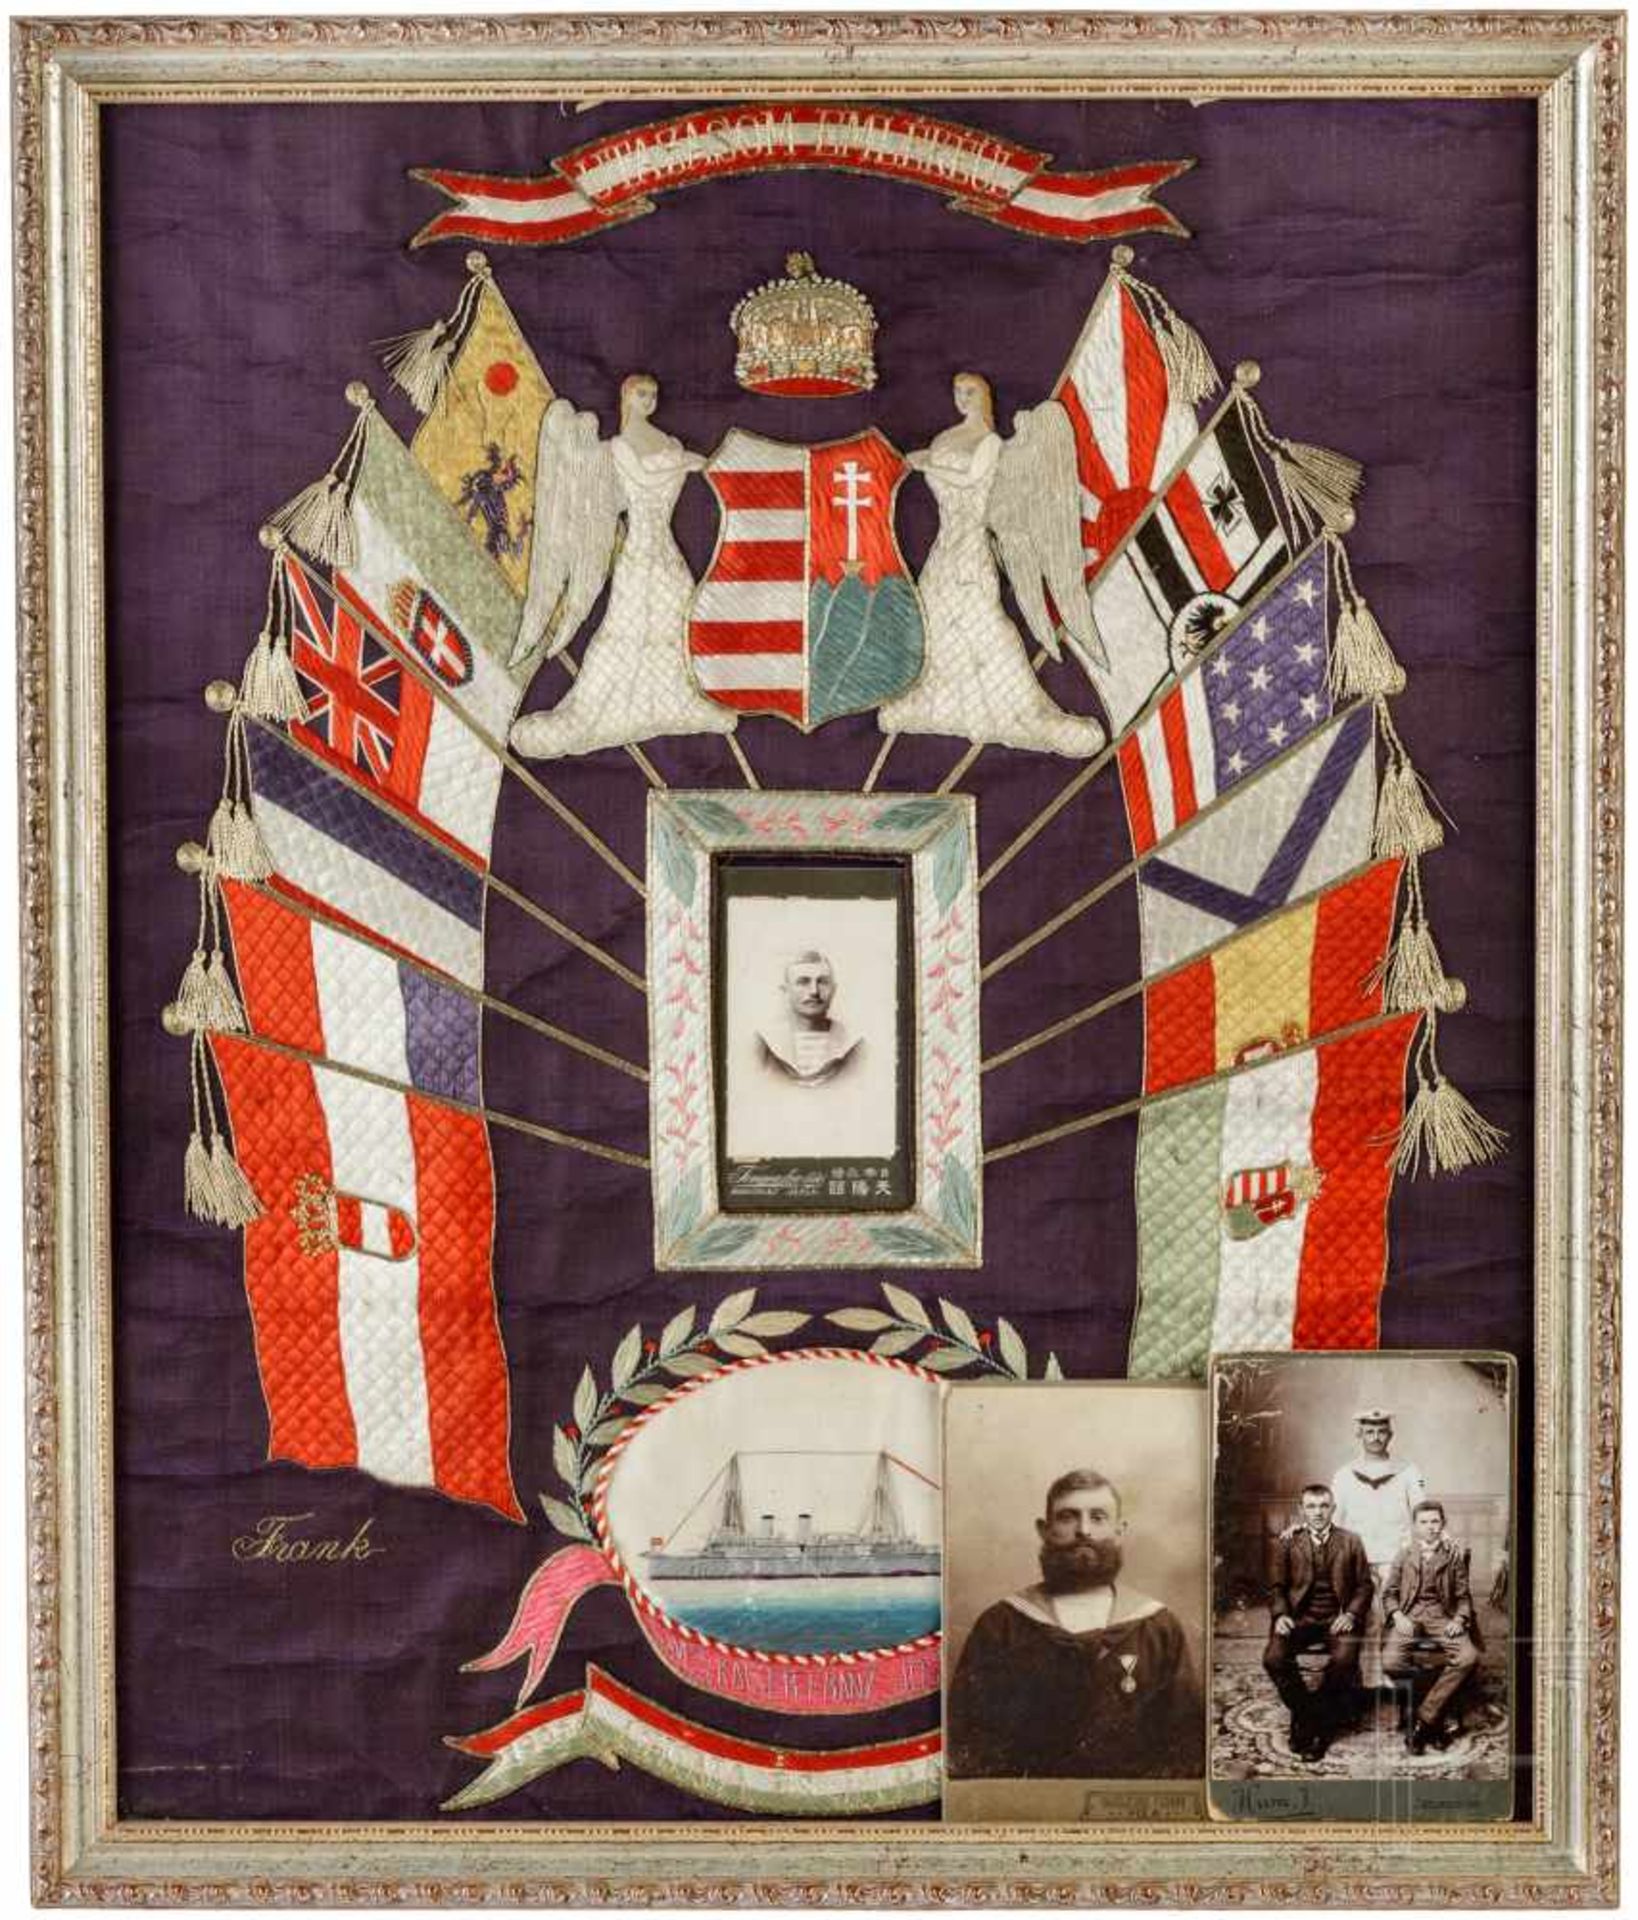 Nachlass des Matrosen Frank Peter der SMS Kaiser Franz Joseph I., 1905 - 1907Großes, aufwendig